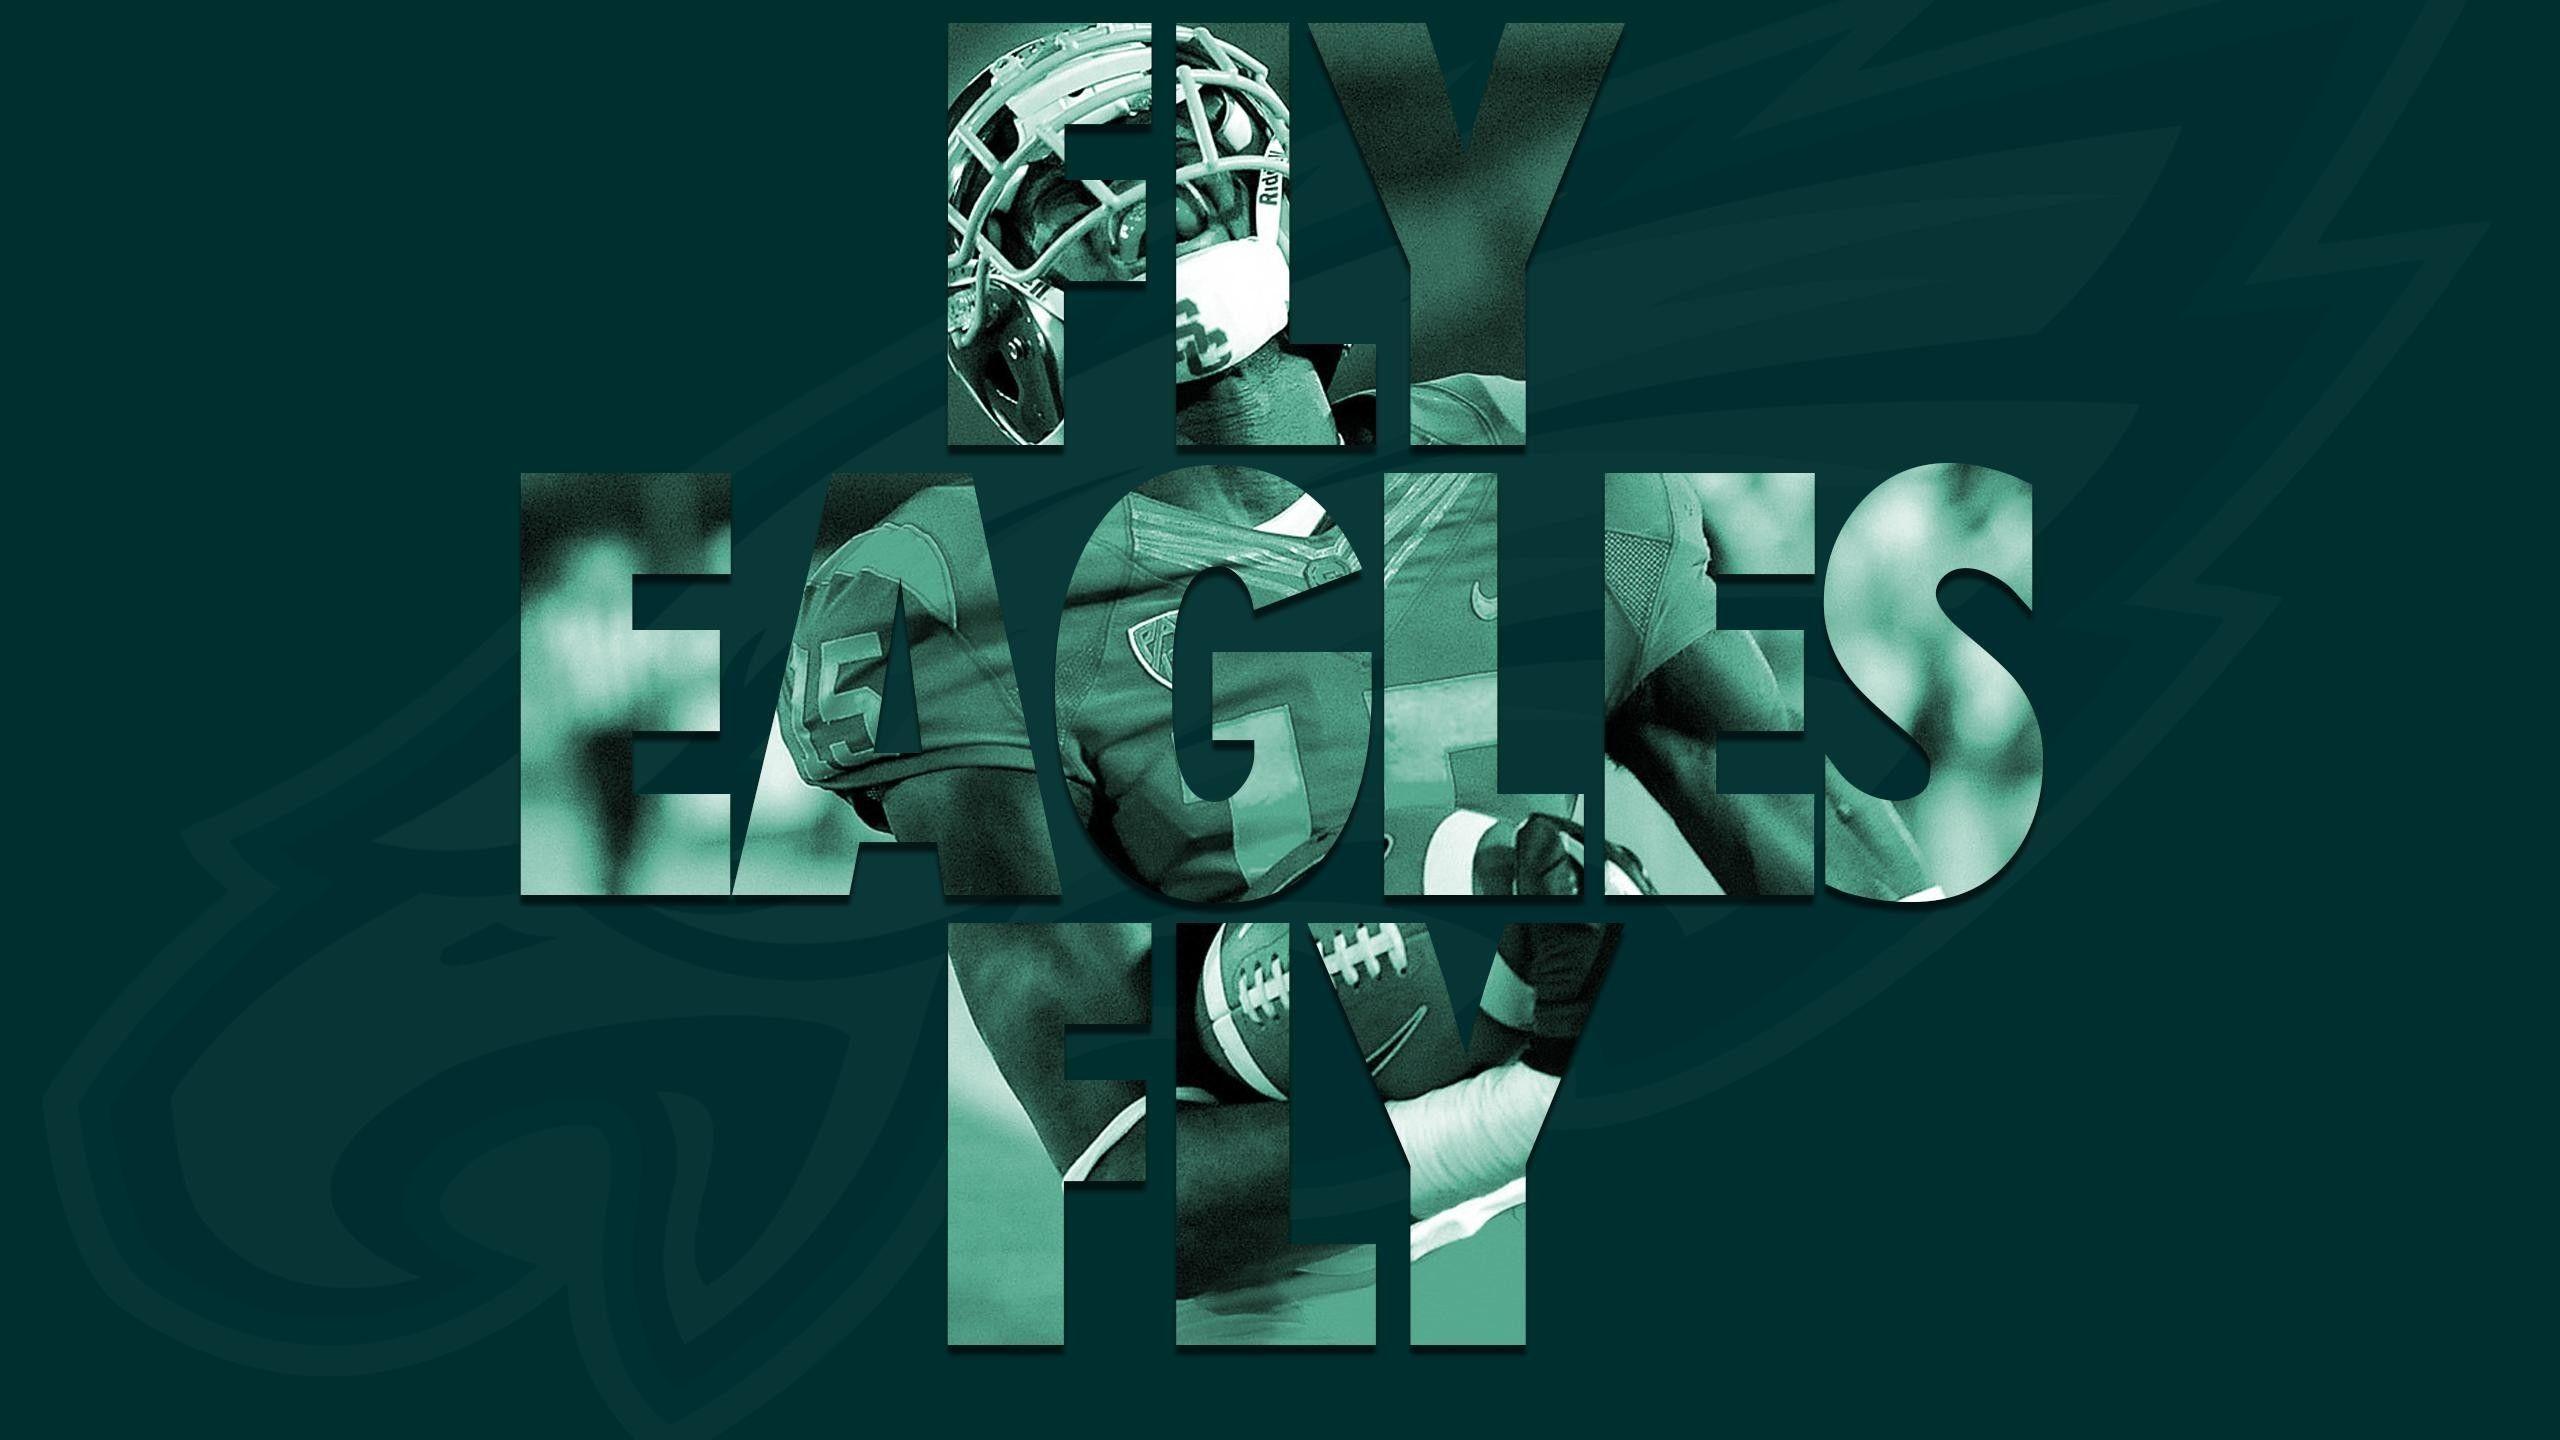 NFL Eagles Wallpaper